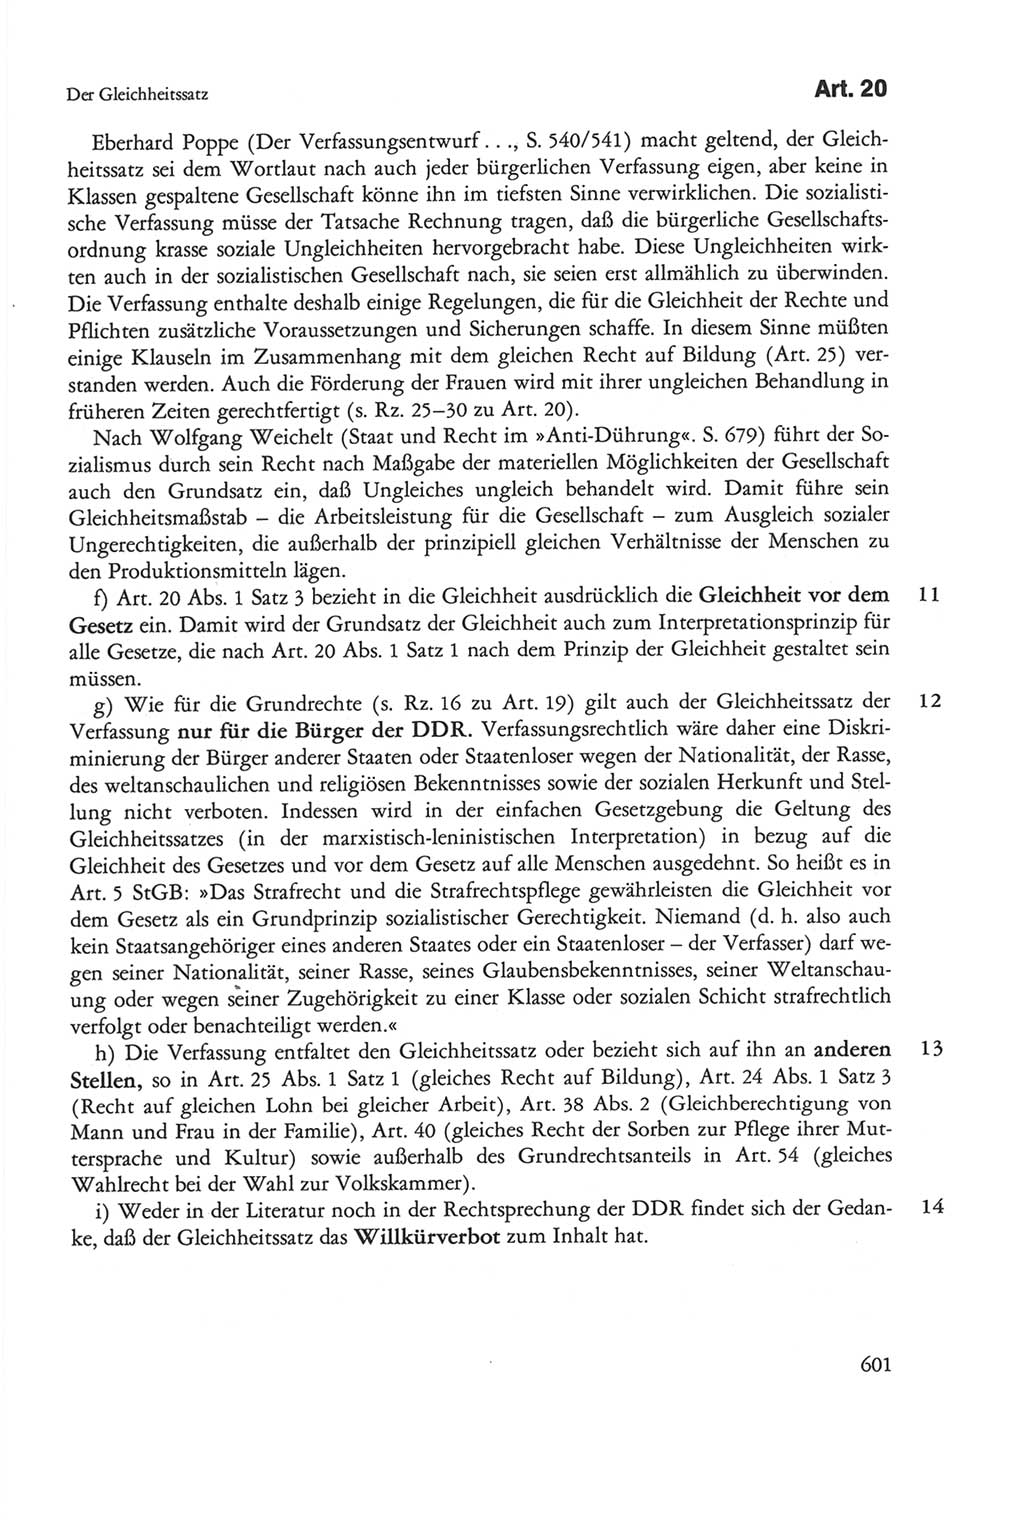 Die sozialistische Verfassung der Deutschen Demokratischen Republik (DDR), Kommentar 1982, Seite 601 (Soz. Verf. DDR Komm. 1982, S. 601)